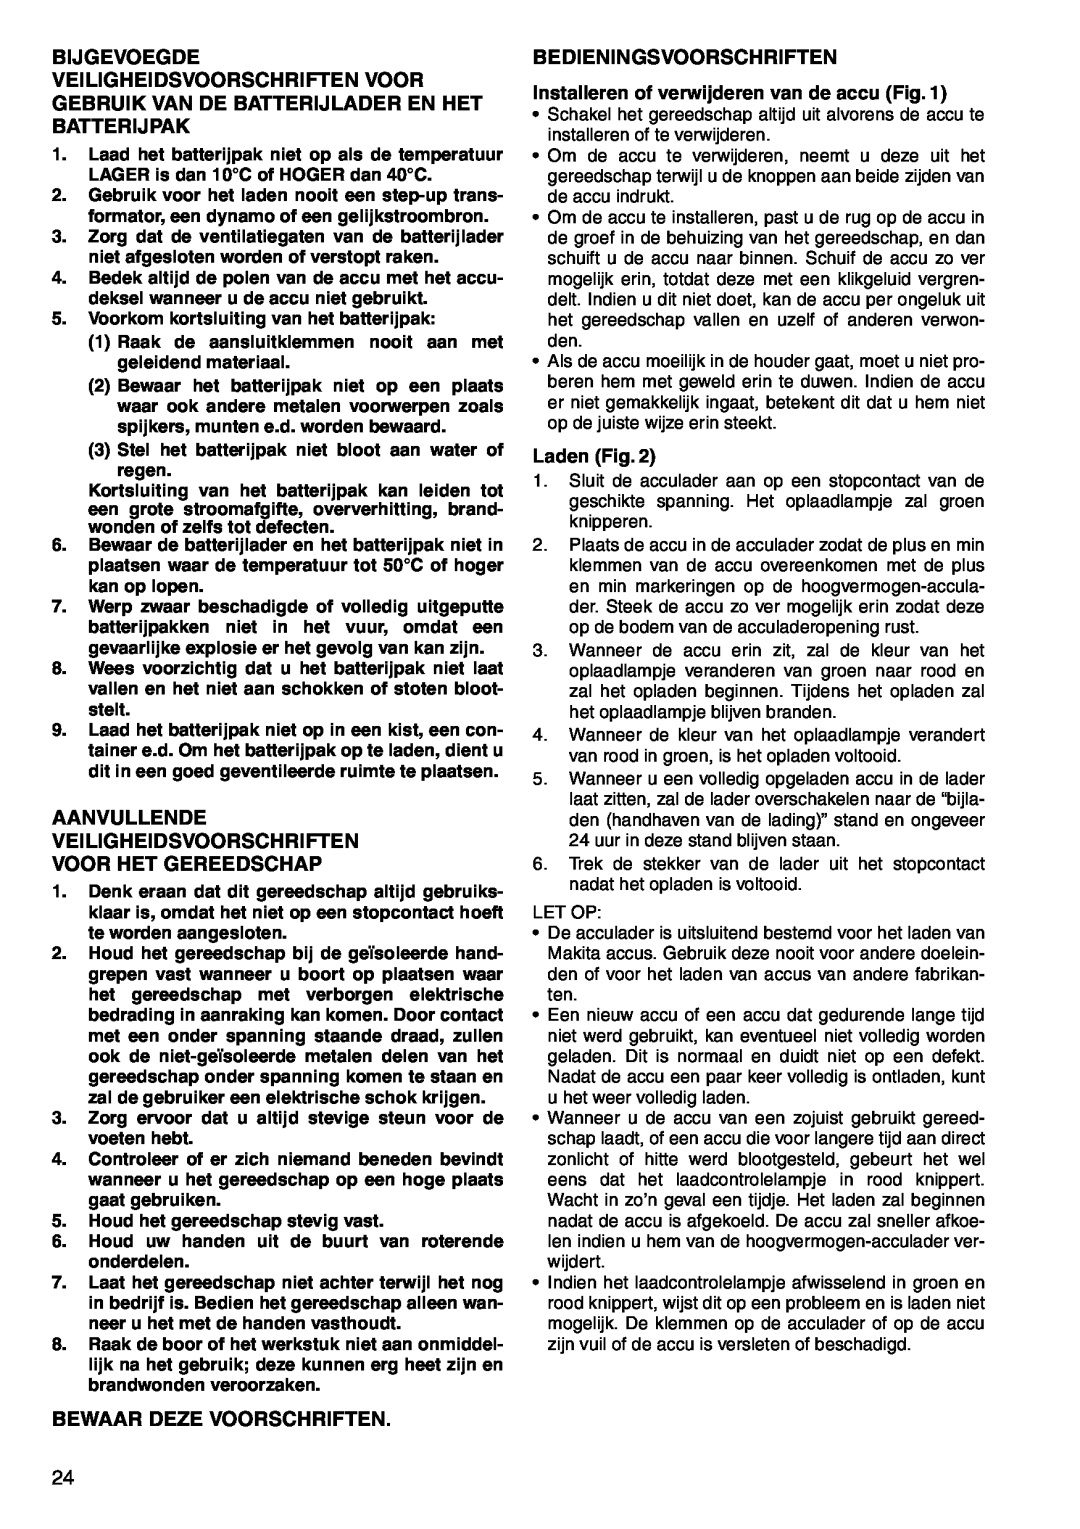 Makita 6207D Aanvullende Veiligheidsvoorschriften Voor Het Gereedschap, Bewaar Deze Voorschriften, Bedieningsvoorschriften 